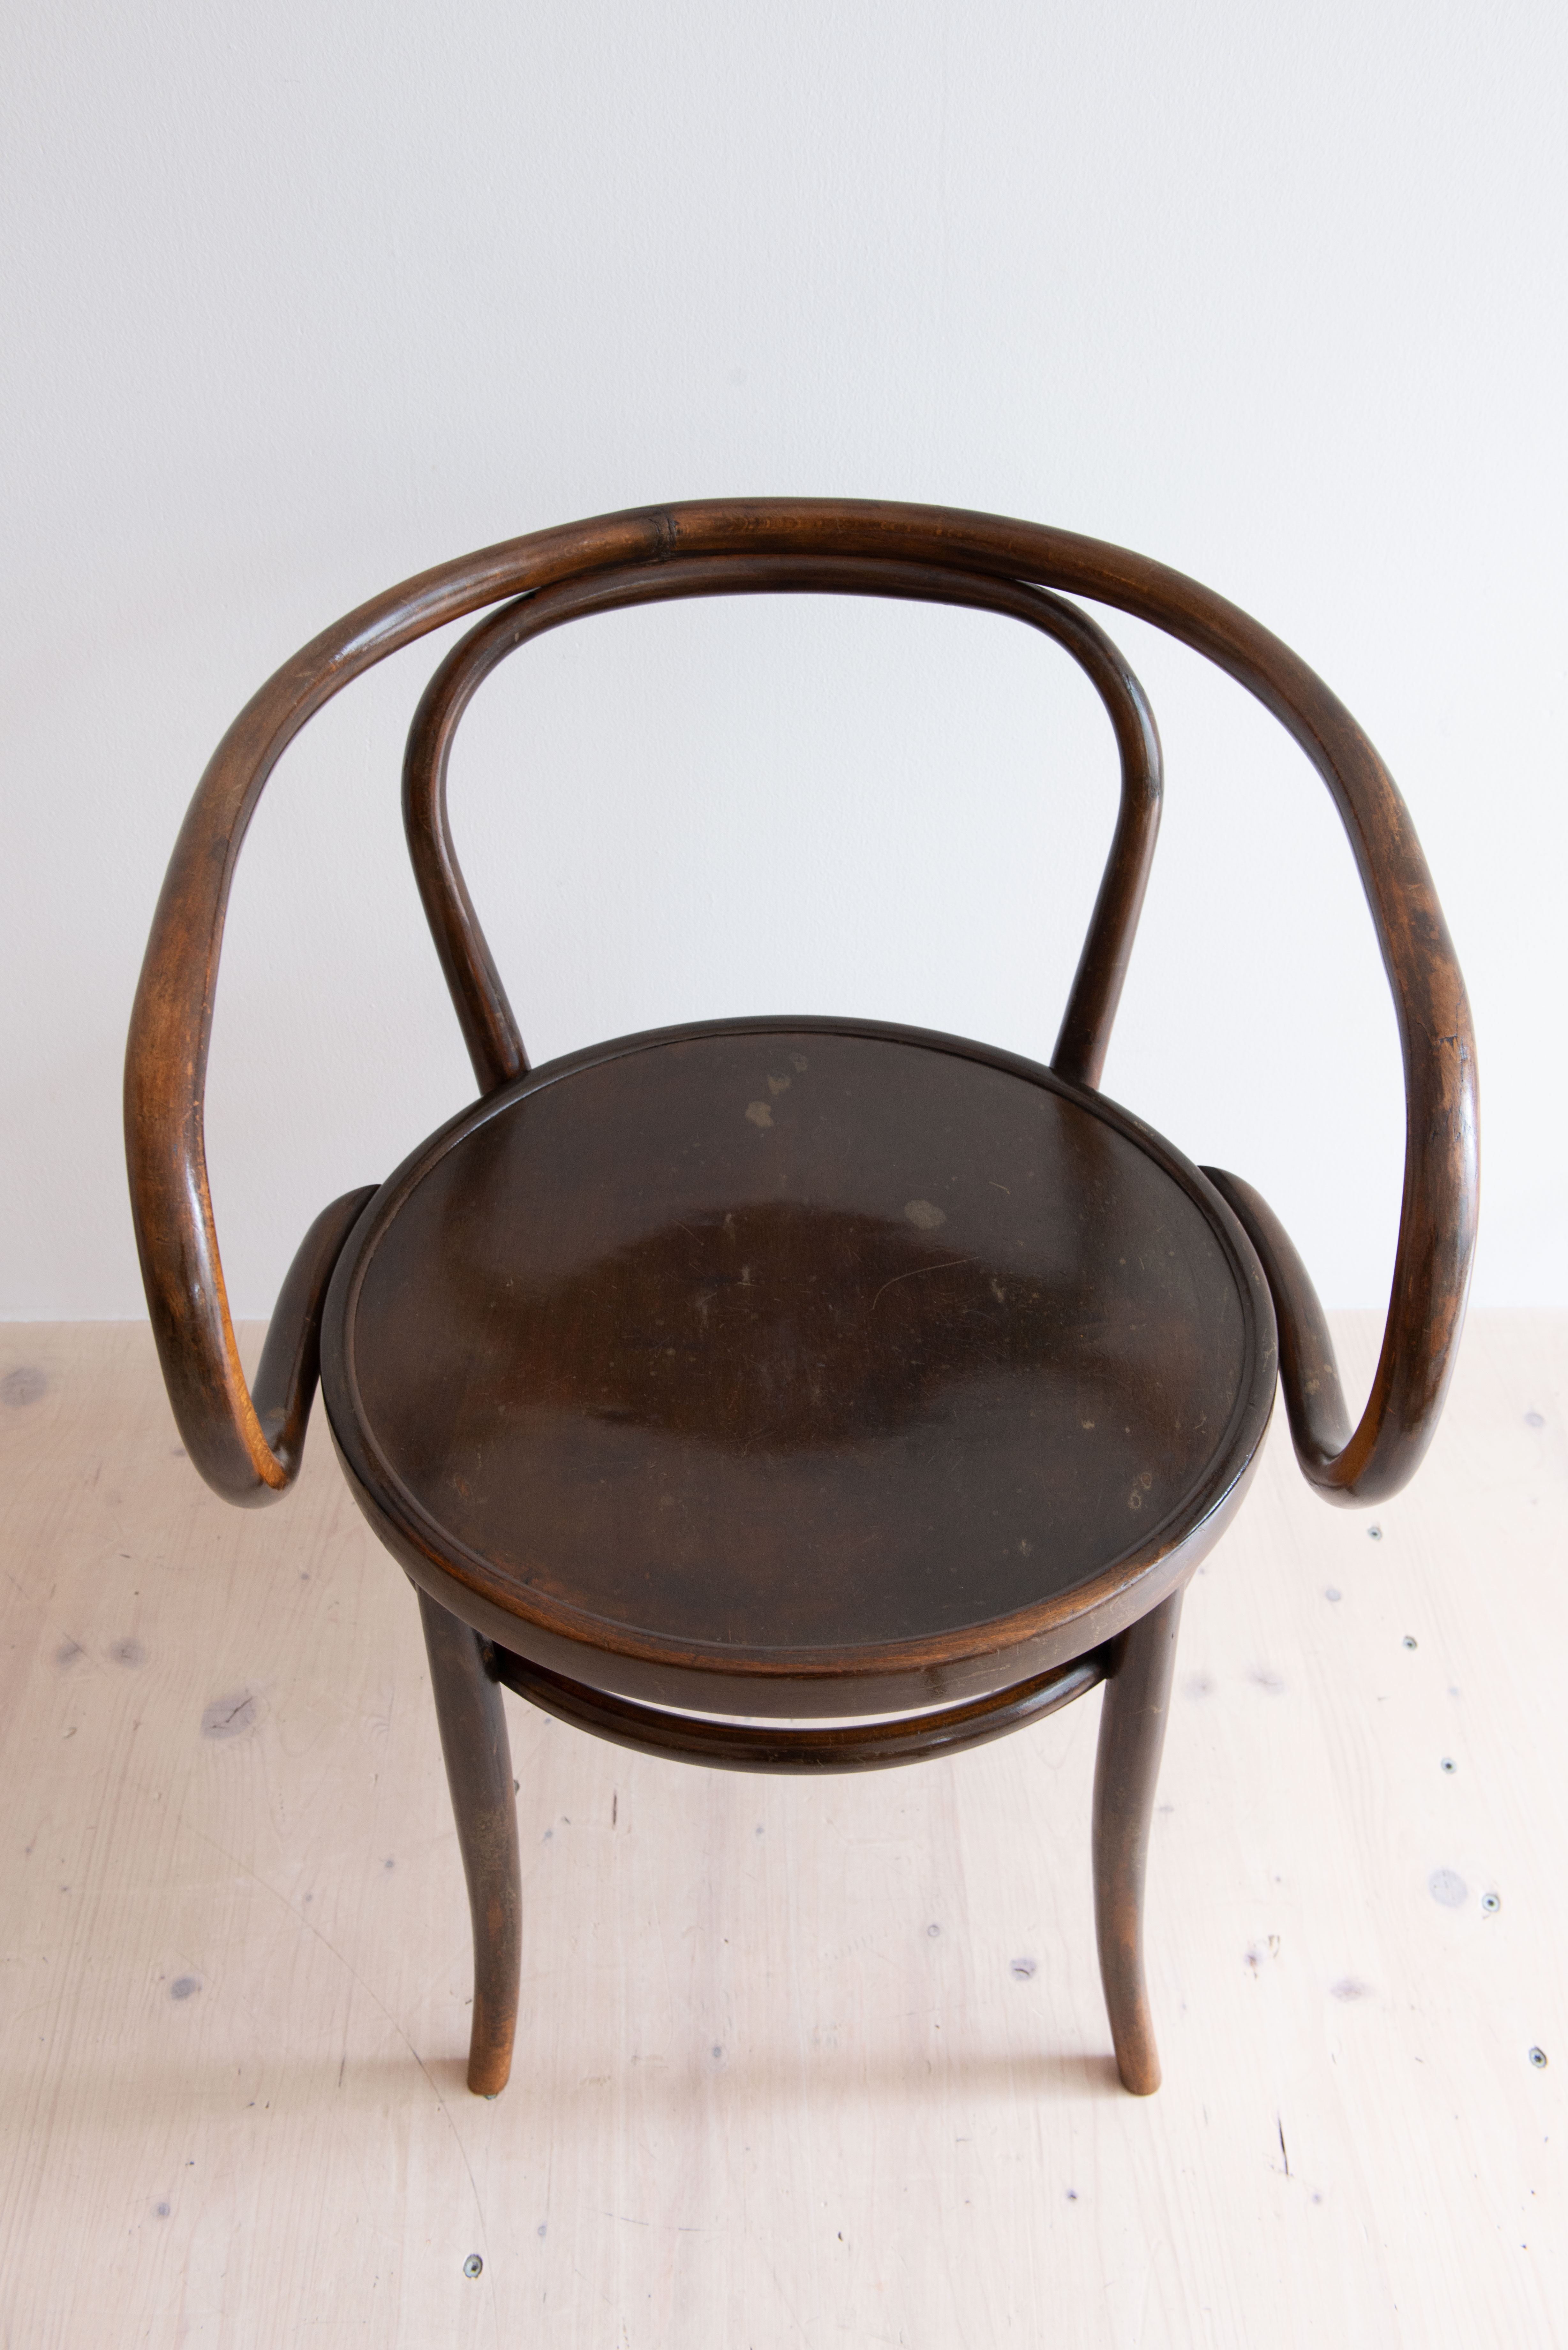 Horgenglarus Bentwood Carver Chair. Produced by Horgenglarus, in Switzerland in the 1940s. Available at heyday möbel. Grubenstrasse 19, 8045 Zurich, Schweiz.